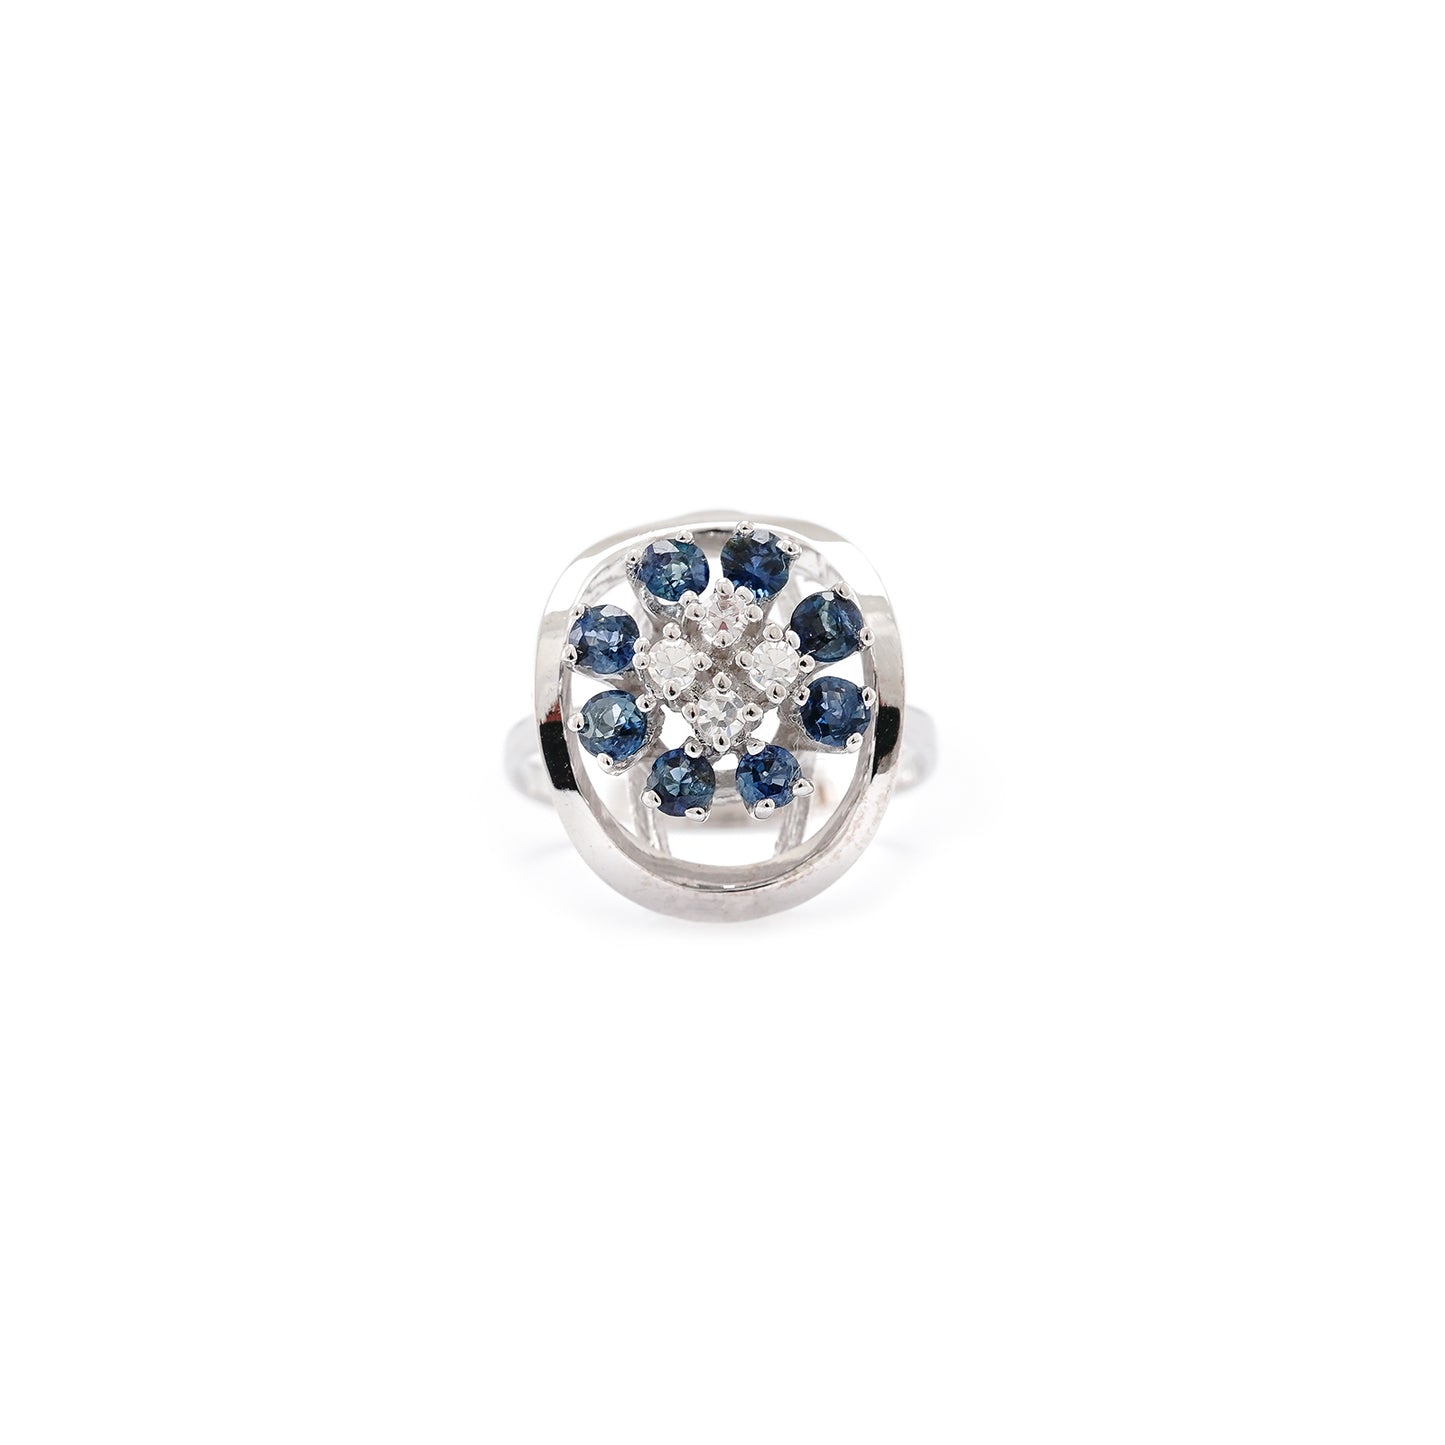 Diamond ring white gold diamond brilliant sapphire 585 14K gemstone ring women's jewelry